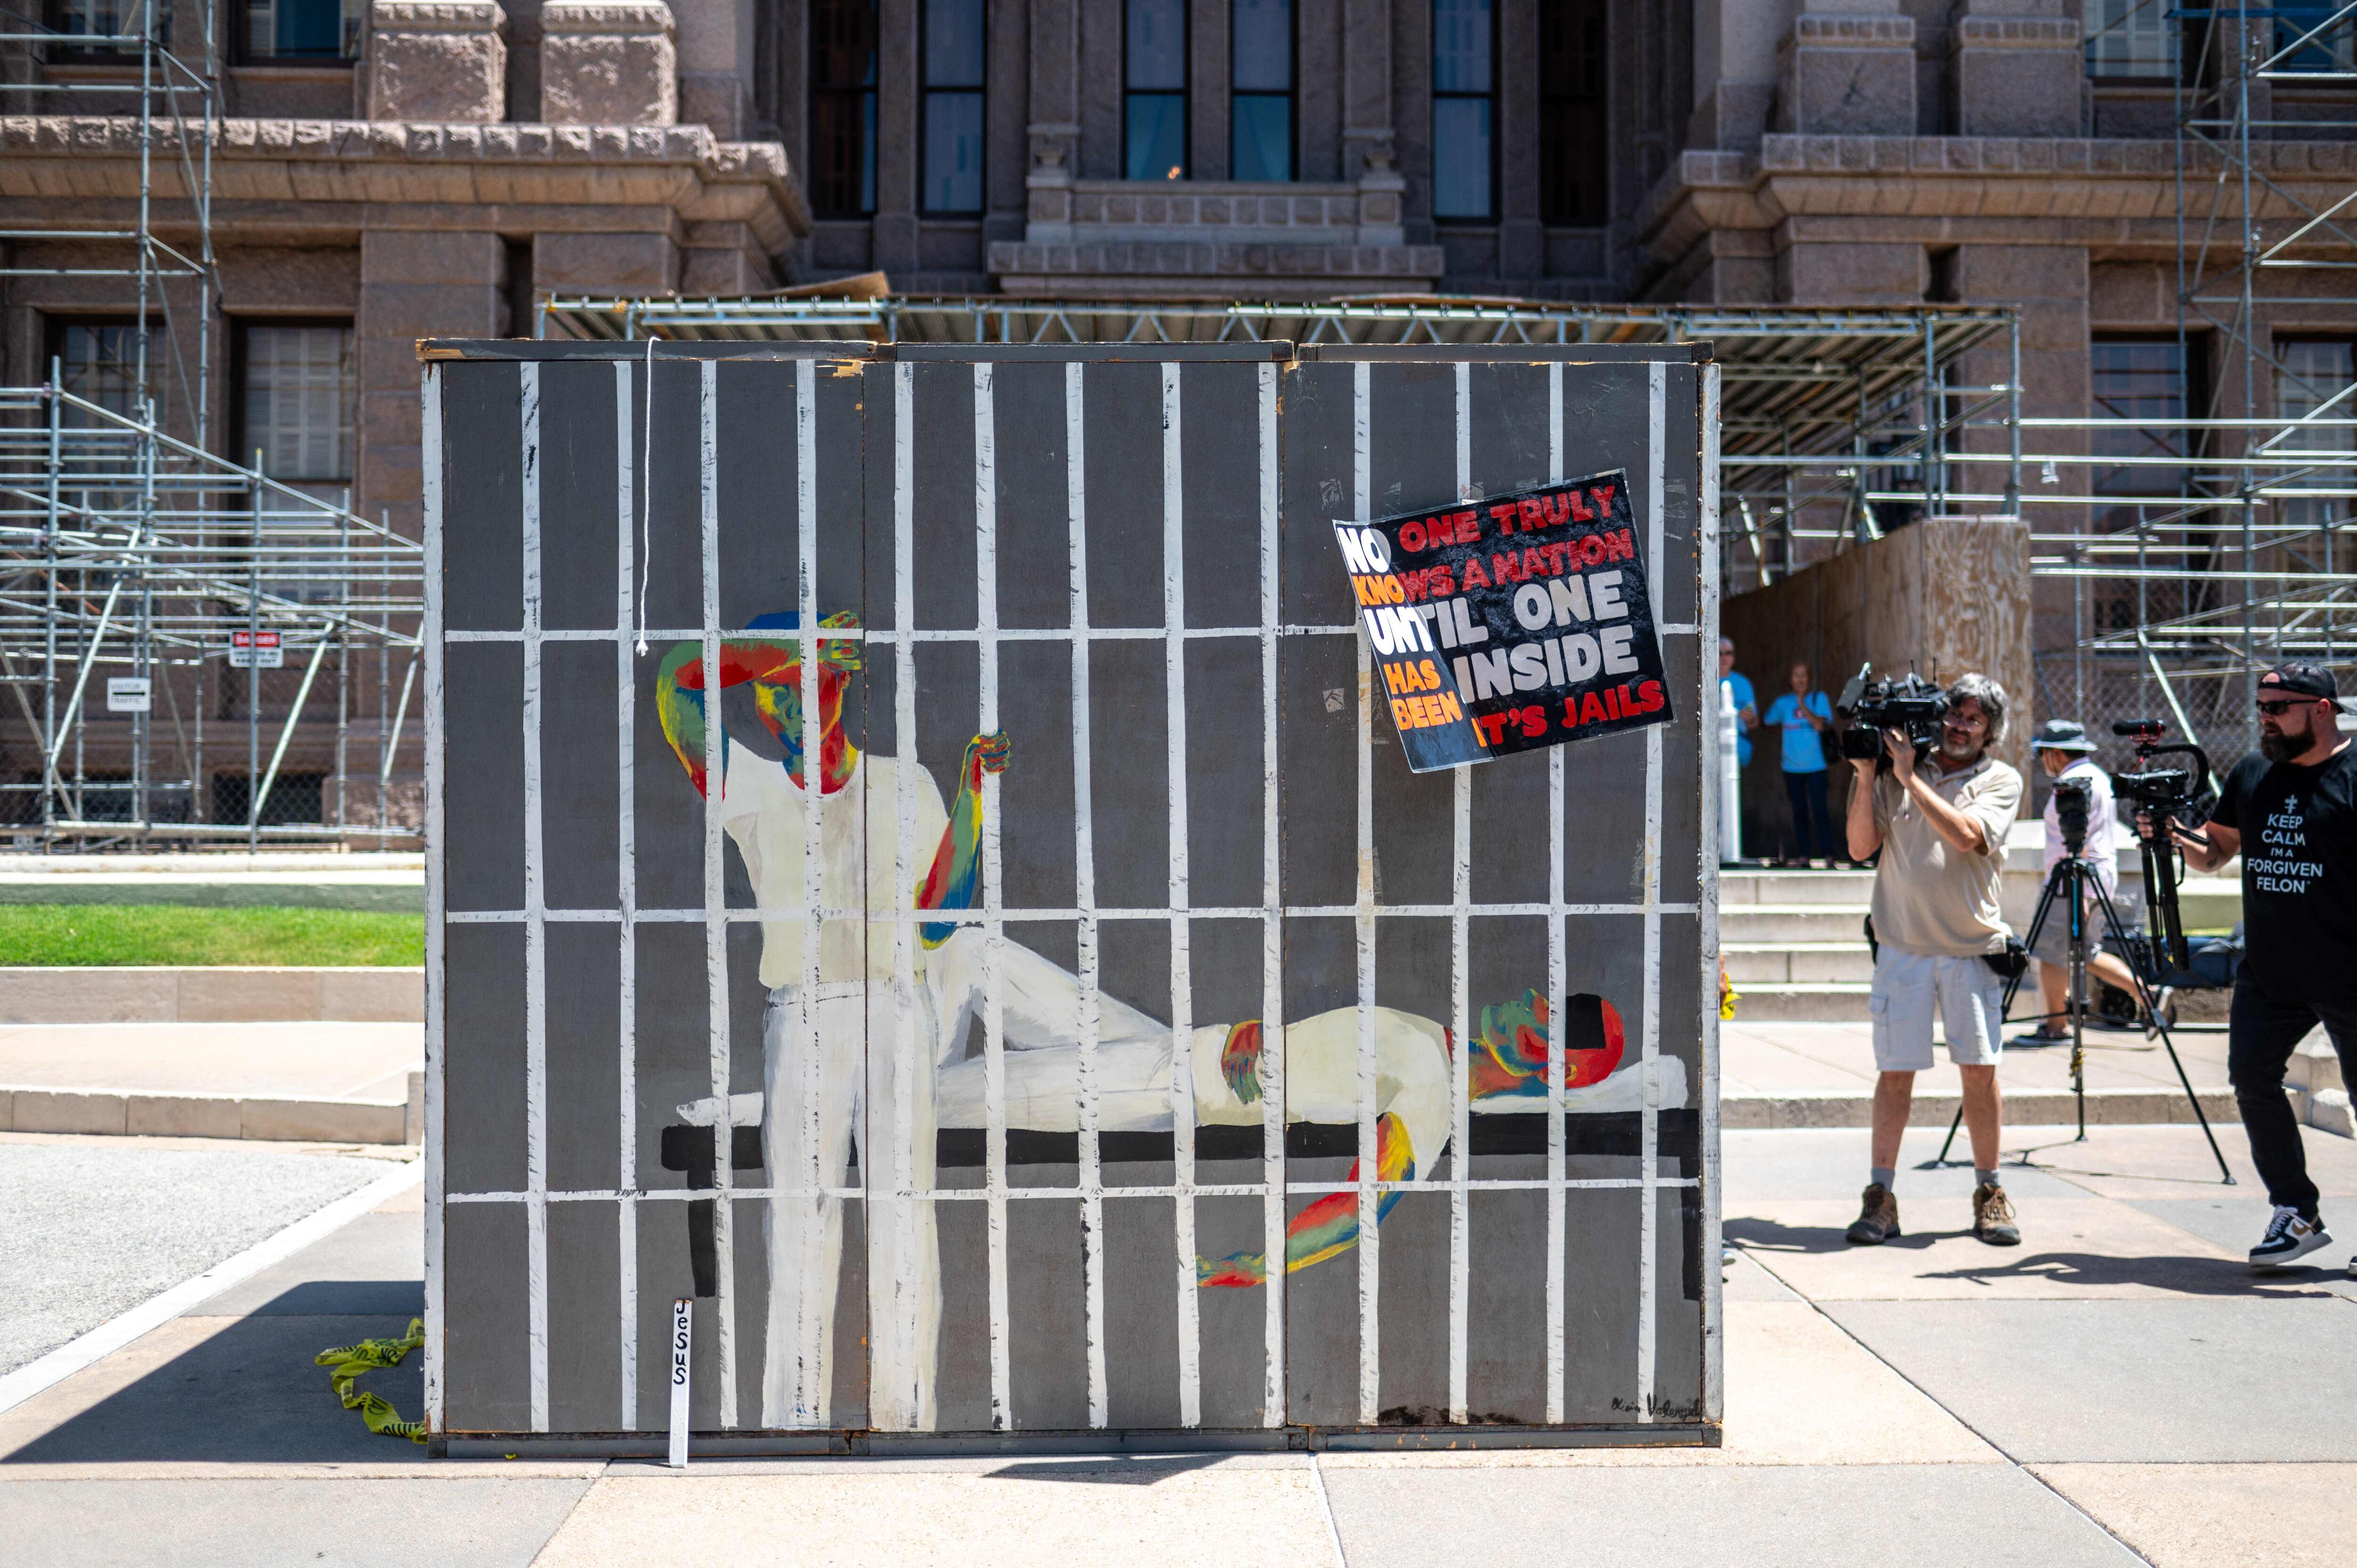 지난달 18일 텍사스 주의회 앞에 감옥 그림이 그려진 간이 시설물이 놓여 있다. 에어컨 없는 좁은 공간을 체험해 보도록 활동가들이 설치했다. /AFP 연합뉴스